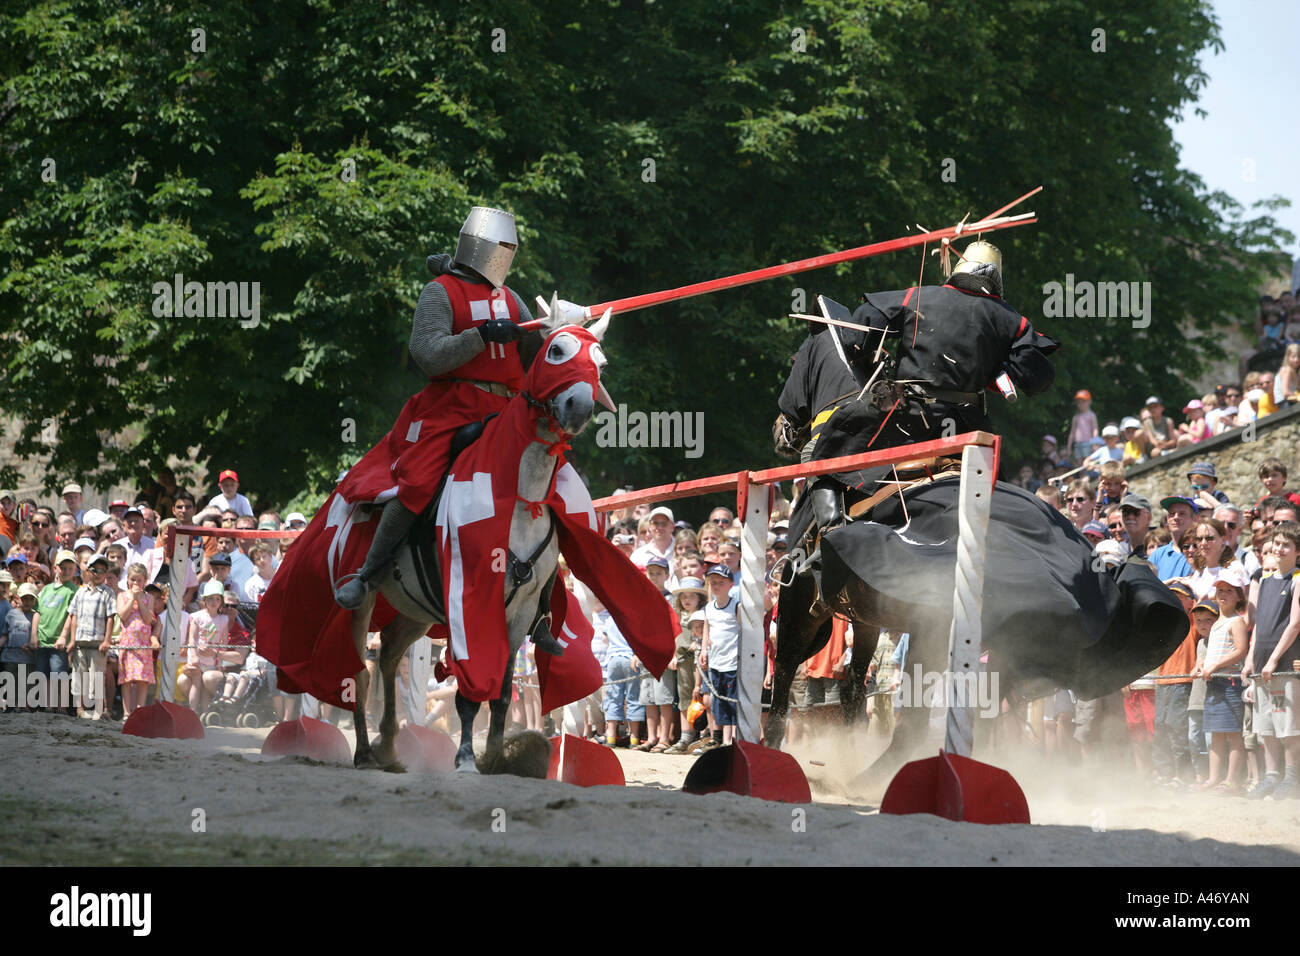 Deux chevaliers sur les chevaux se battent avec des lances à un spectacle sur la forteresse Ehrenbreitstein près de Coblence, Rhénanie-Palatinat Banque D'Images